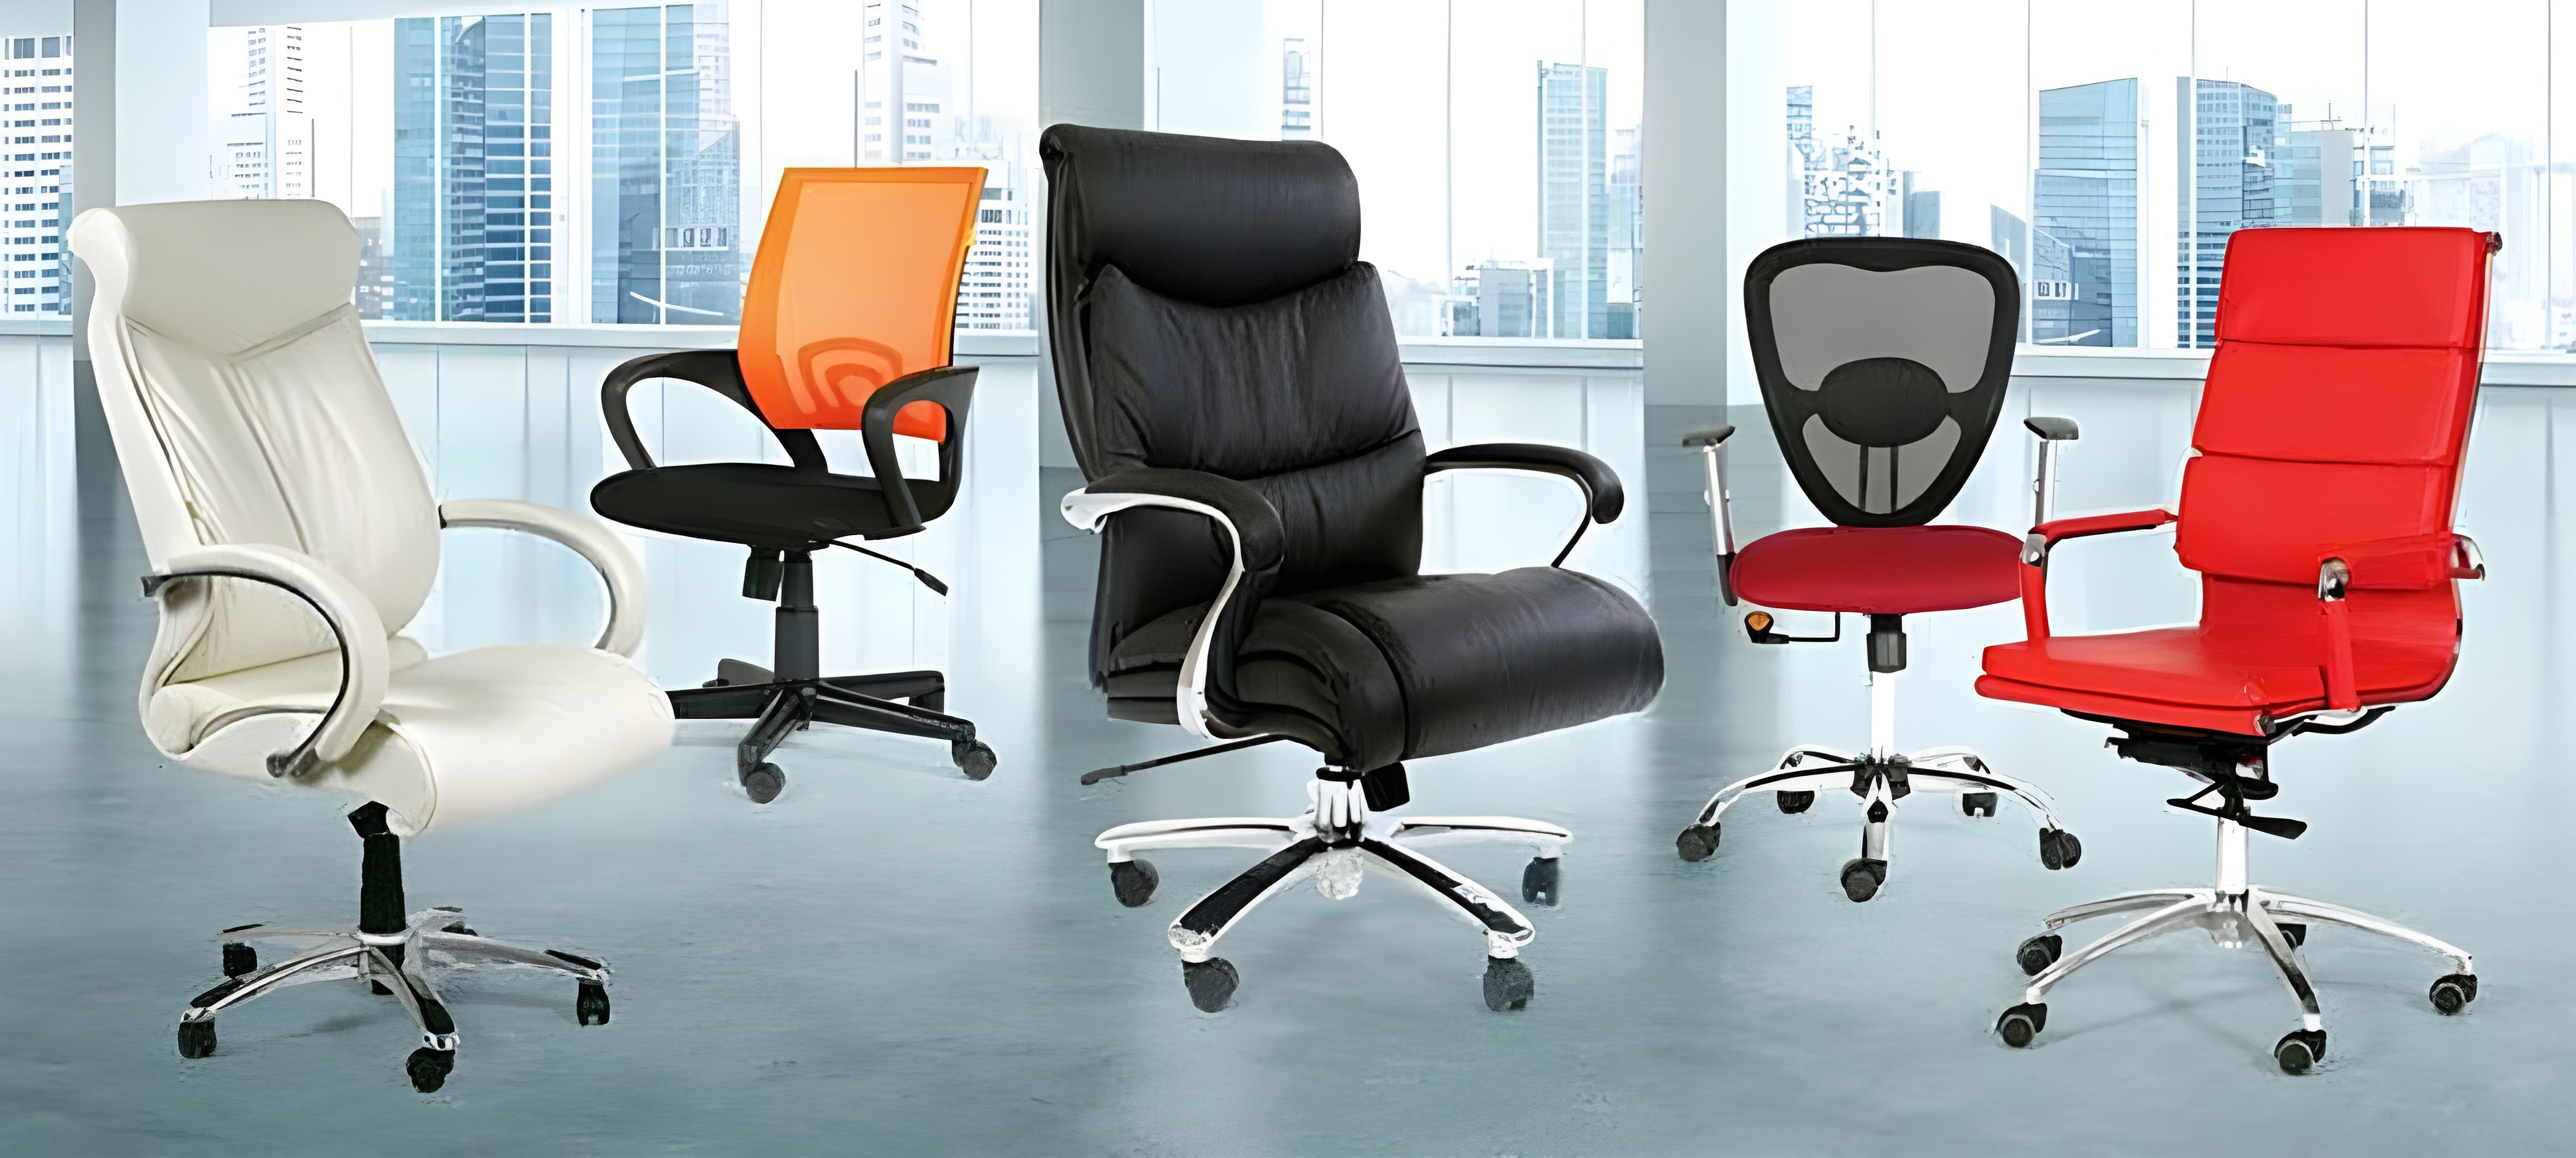 Как выбрать идеальное офисное кресло для комфорта и продуктивности